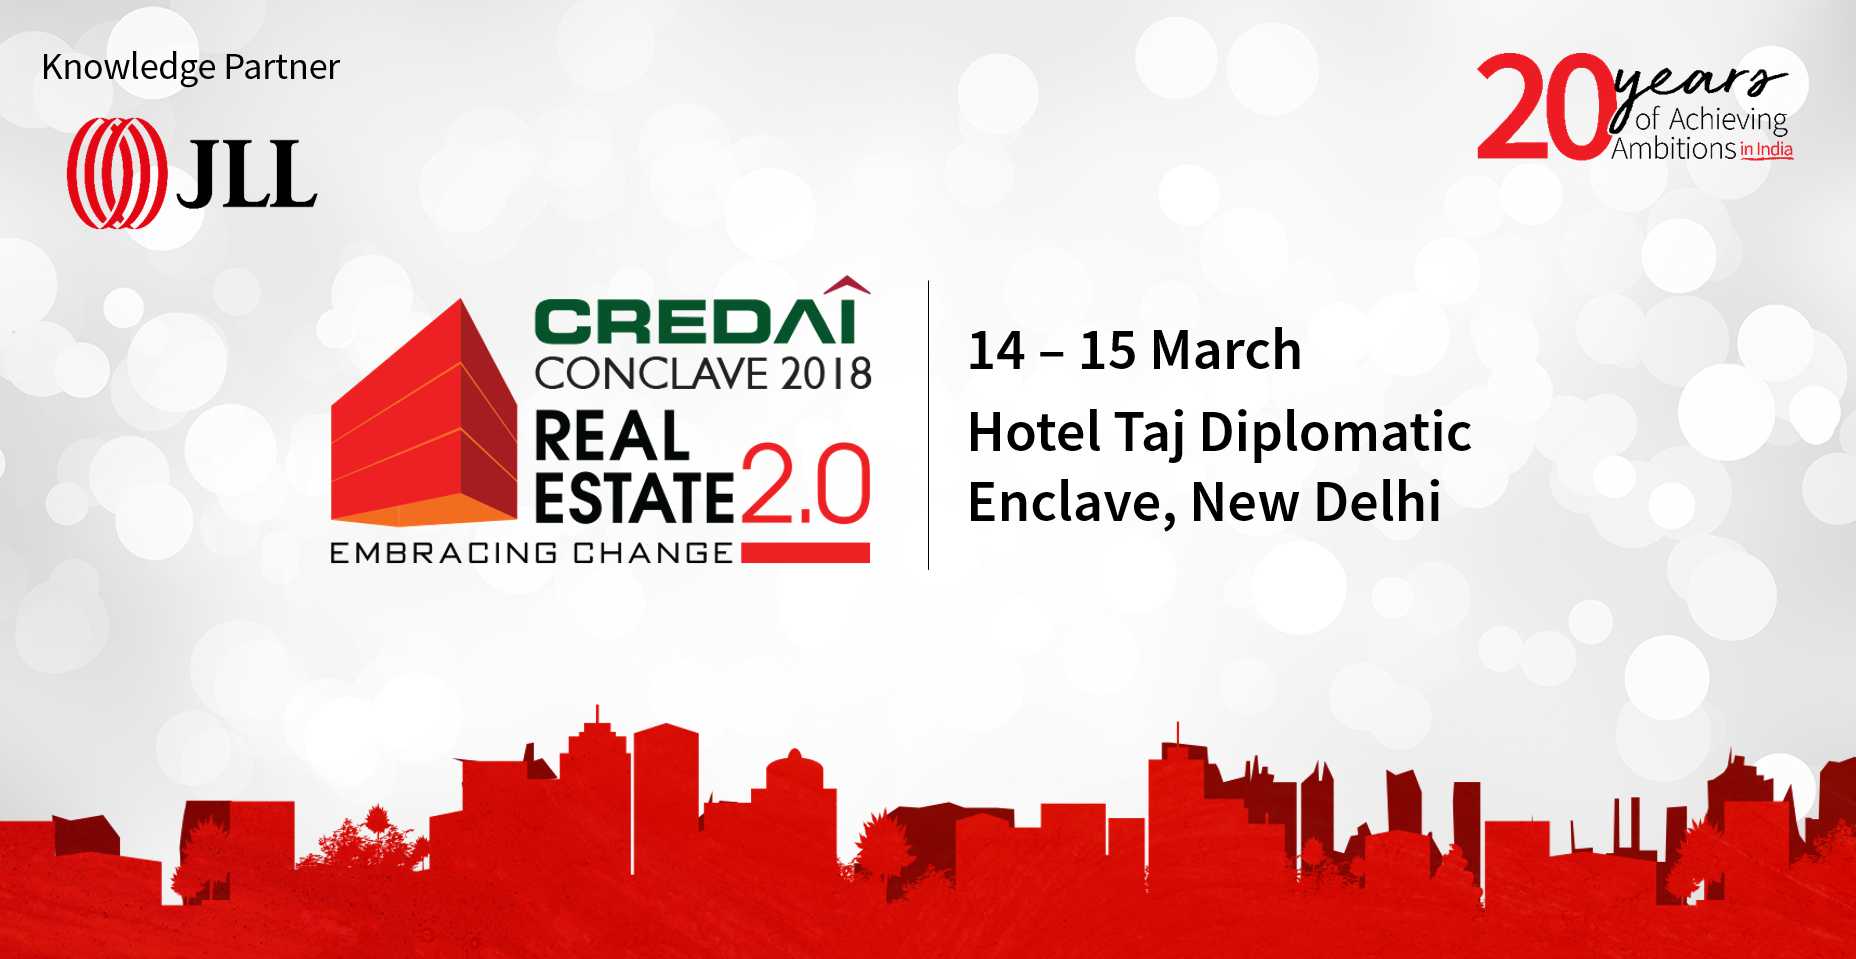 CREDAI Conclave 2018 Real Estate, New Delhi Update